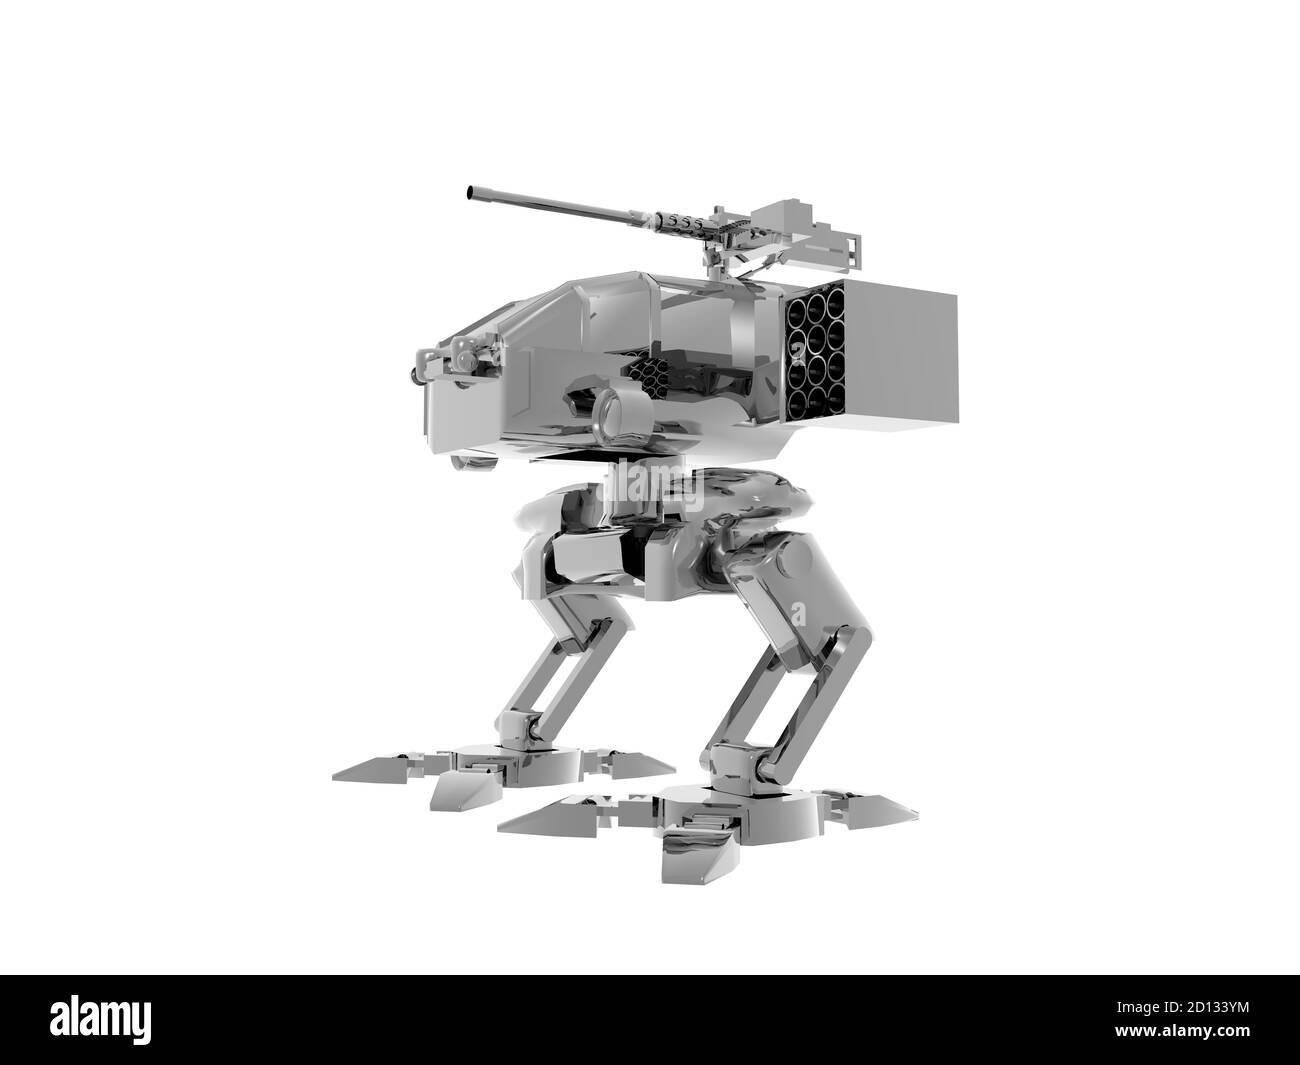 Zweibeinige Roboter mit Waffen als Wachhund Stockfotografie - Alamy